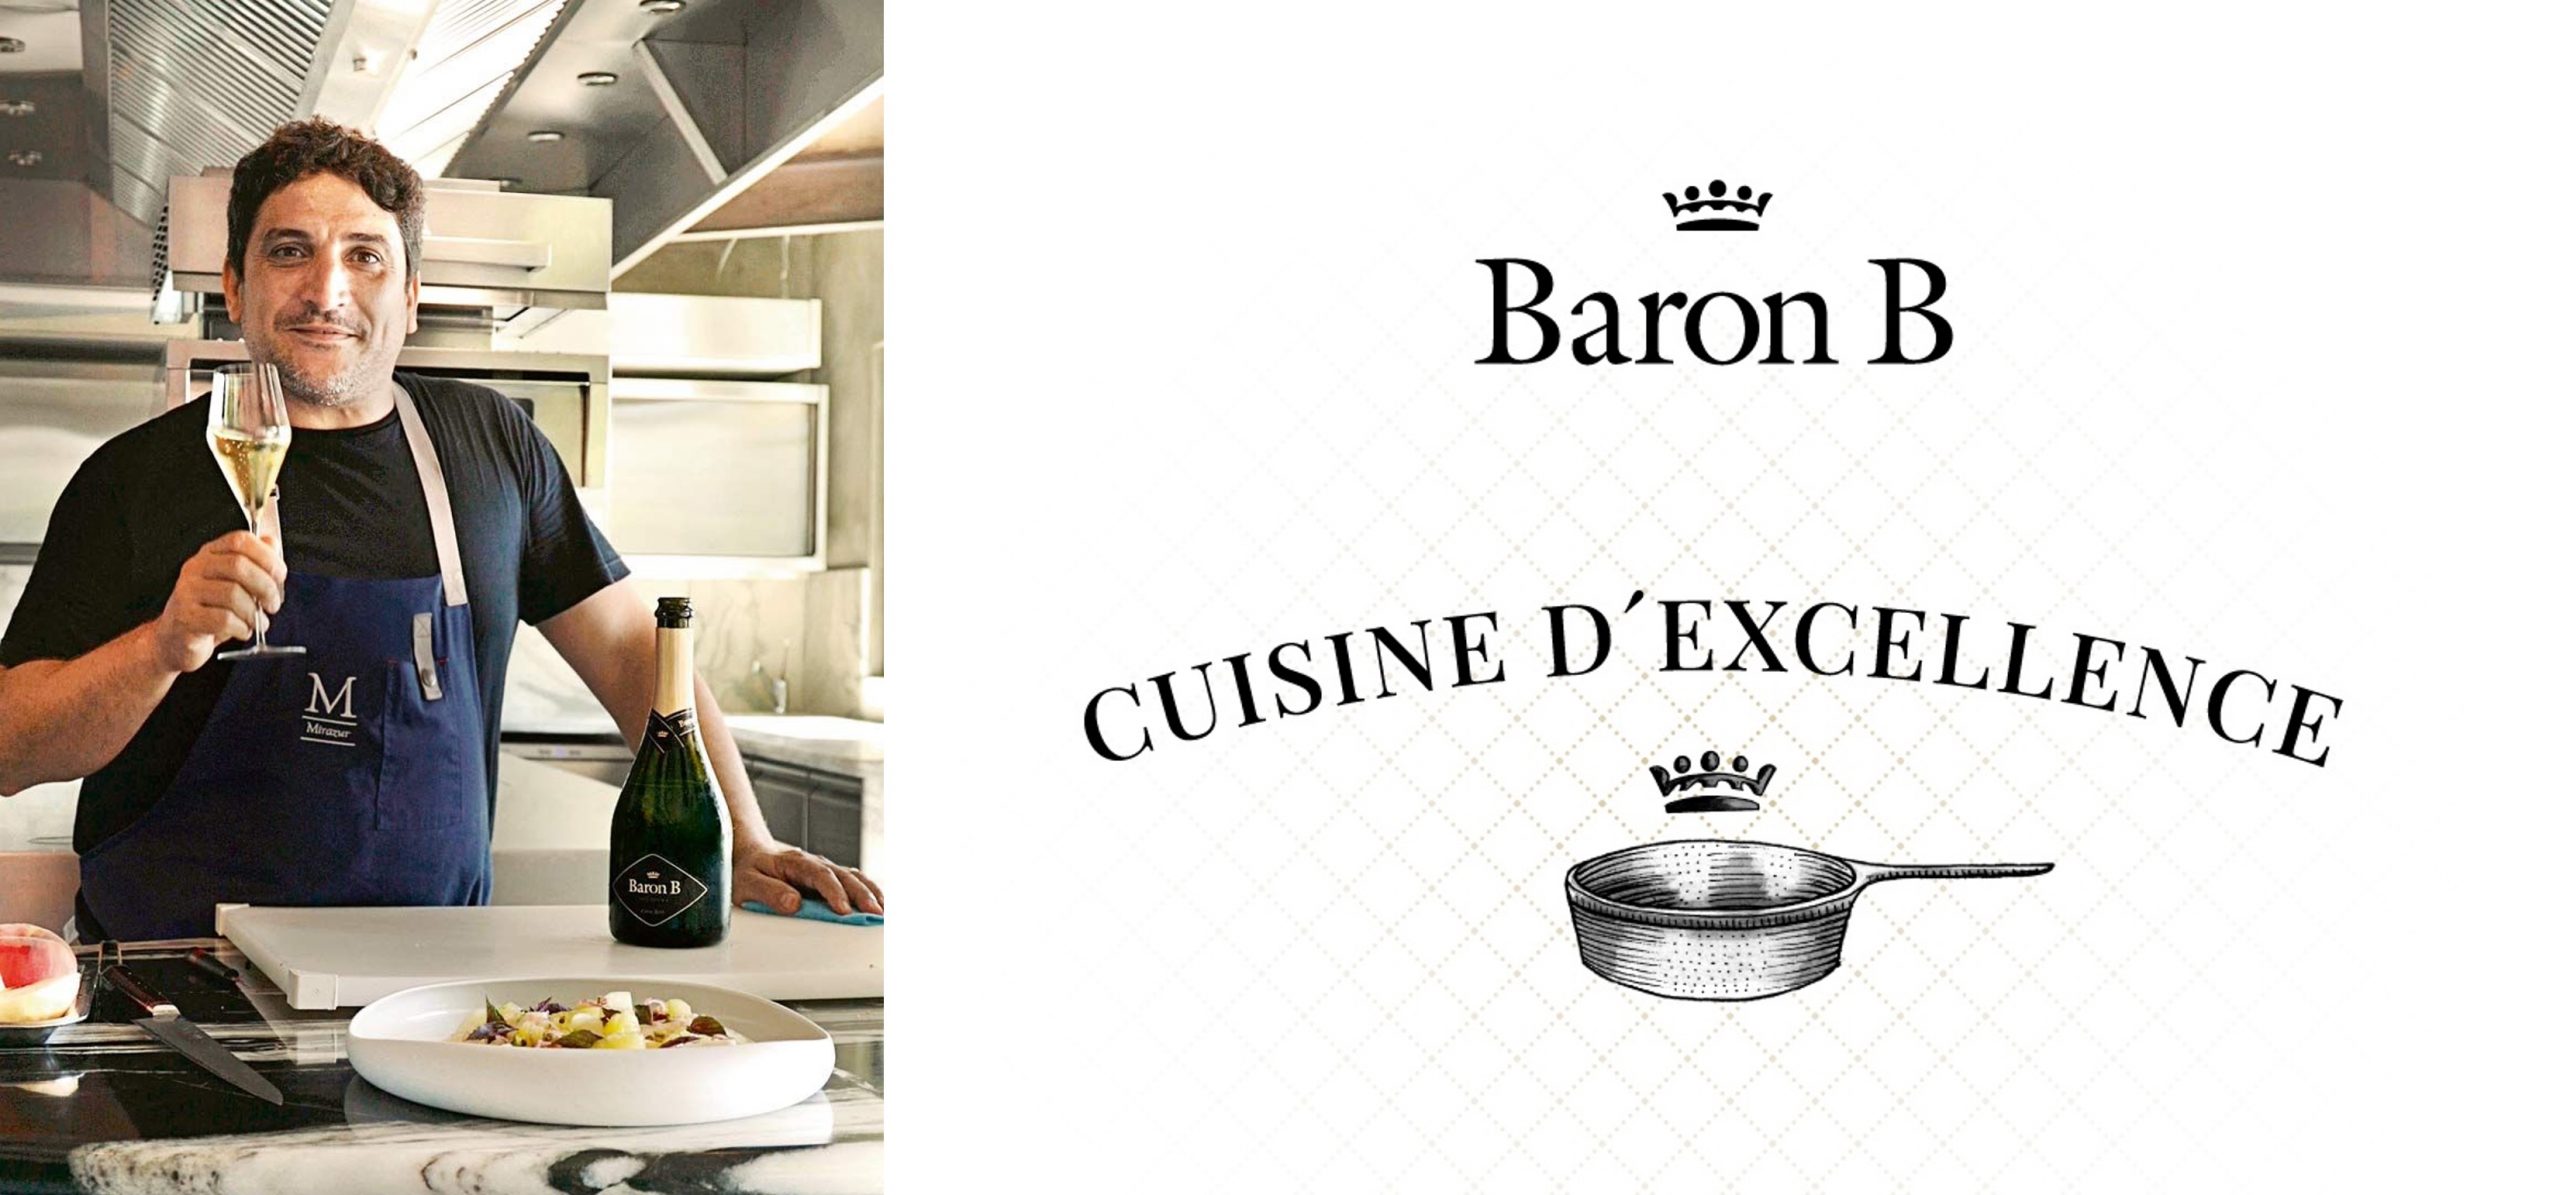 Mauro Colagreco presentó su plato para los ciclos de Baron B – Cuisine D´Excellence